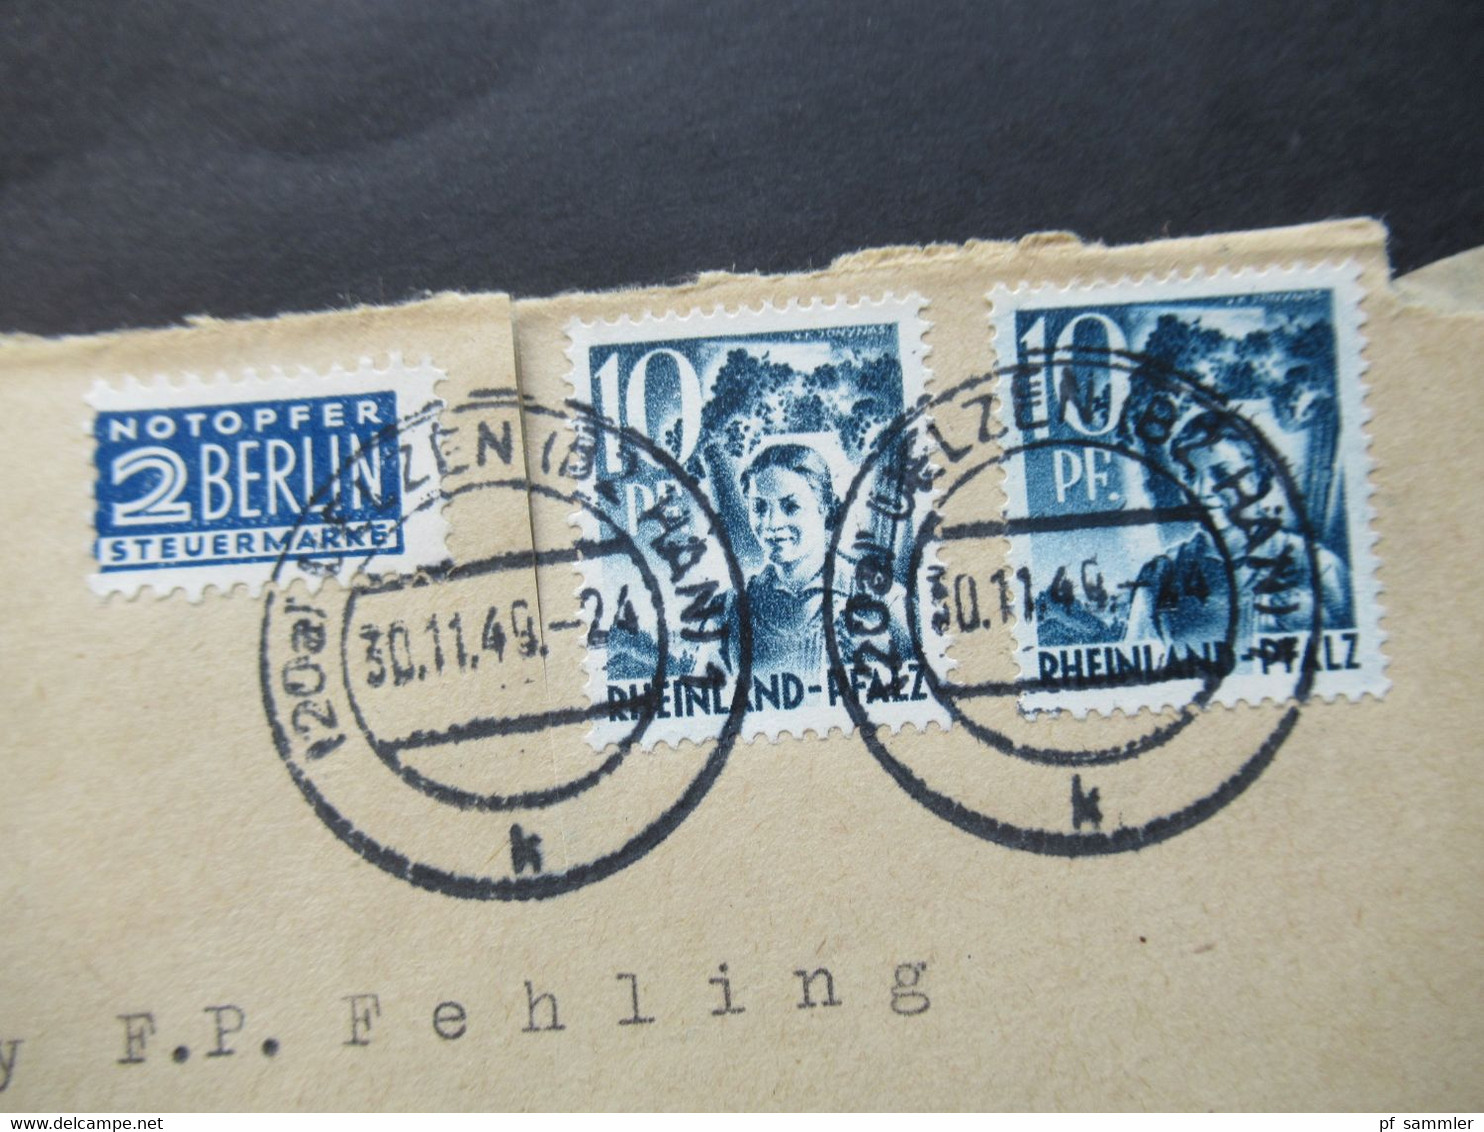 Französische Zone Rheinland Pfalz Nr.3 MeF  30.11.1949 Mit Notopfer Marke Umschlag Saatgut Heinr. Gerke Uelzen Hannover - Rhénanie-Palatinat